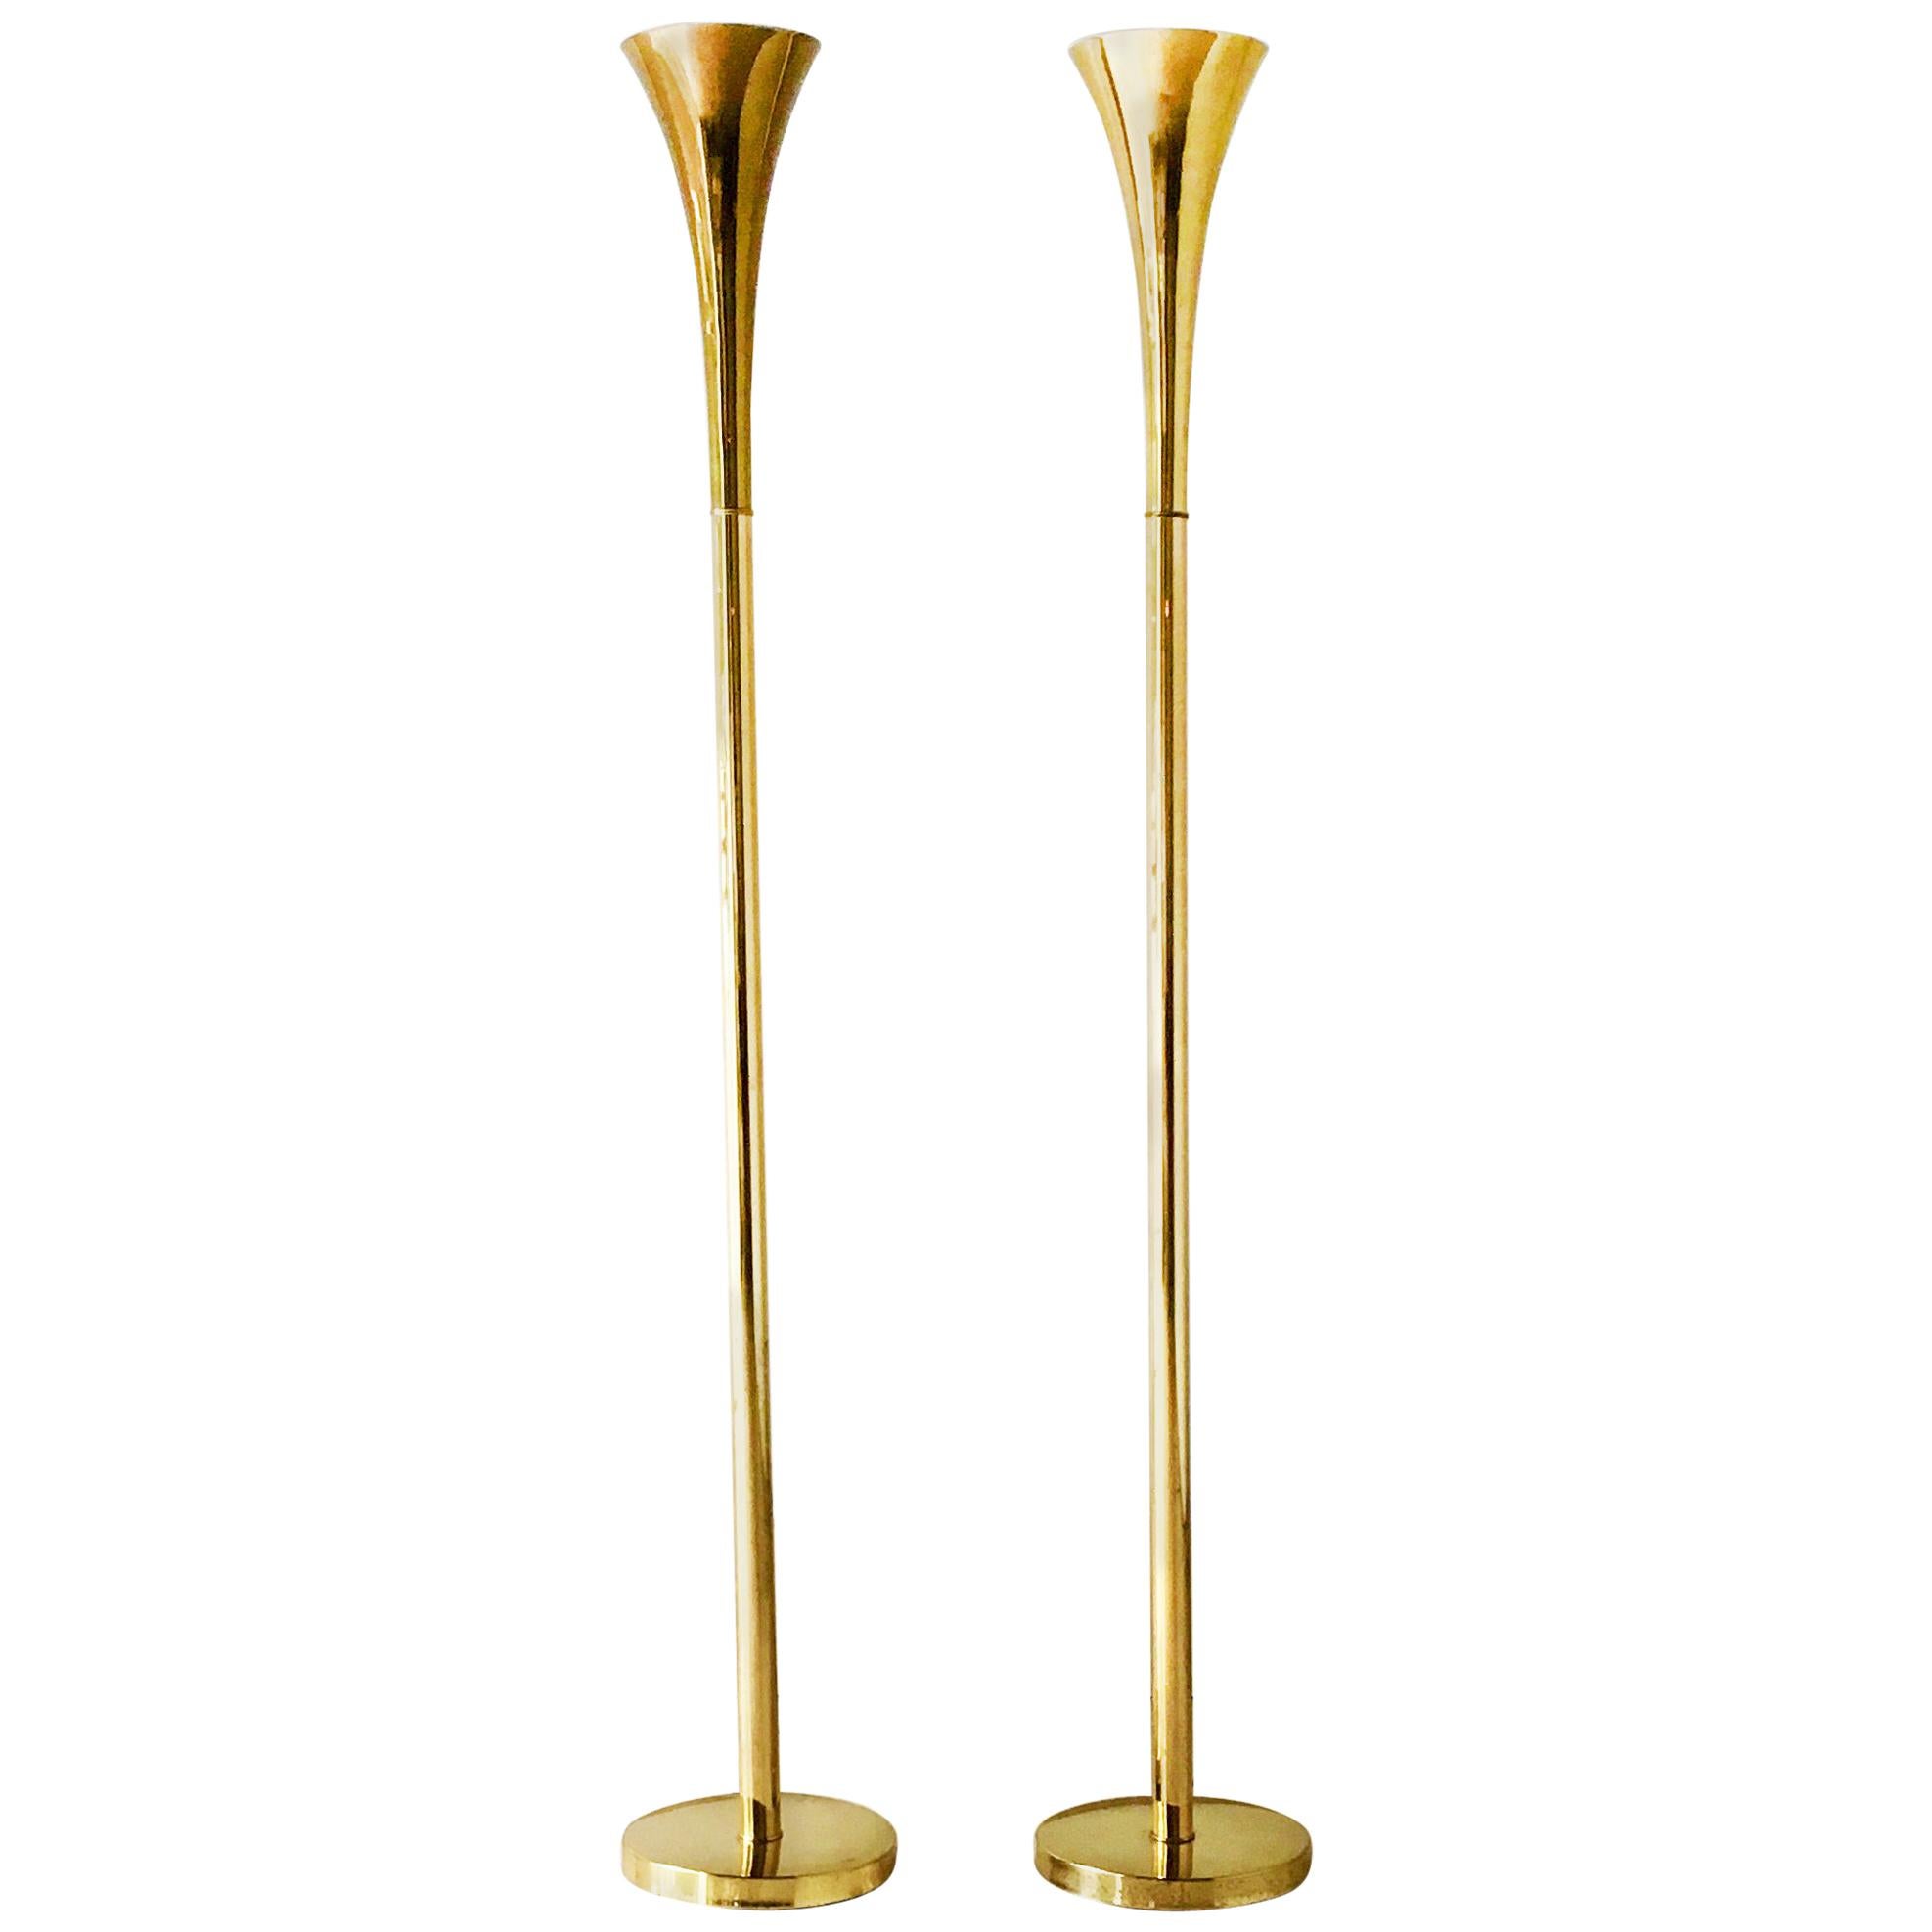 Pair of Brass Trumpet Uplighter Floor Lamps by Laurel, 1960s